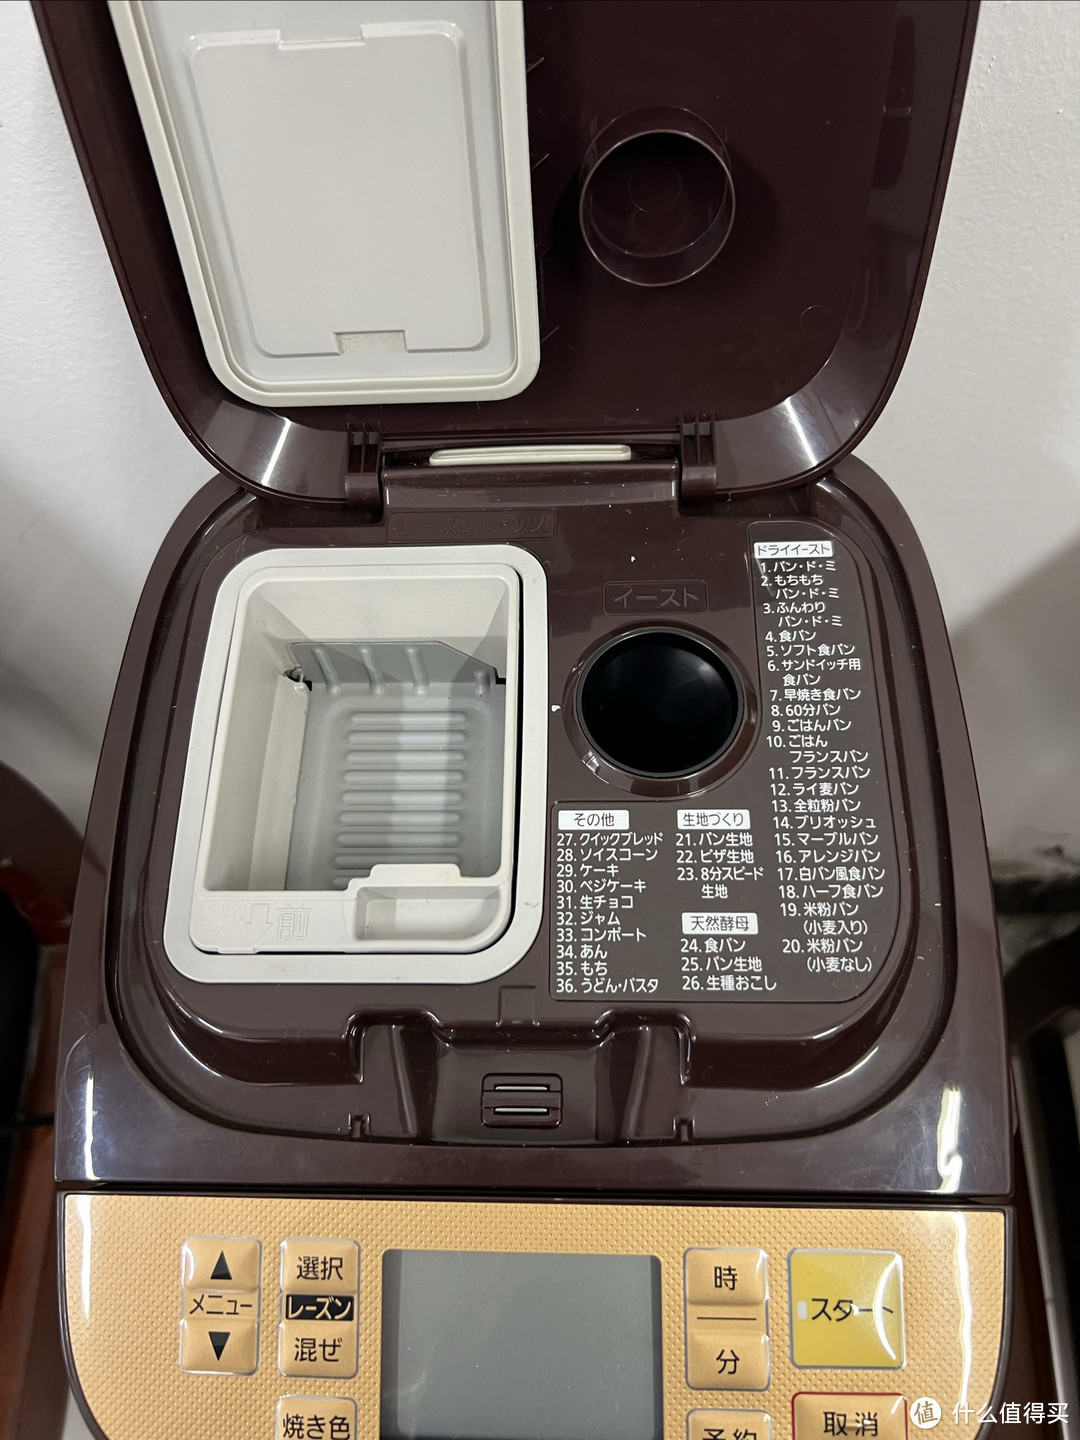 海淘了一个松下的面包机，又是一款用了8年的松下电器，它的型号是SD-BMT 1001